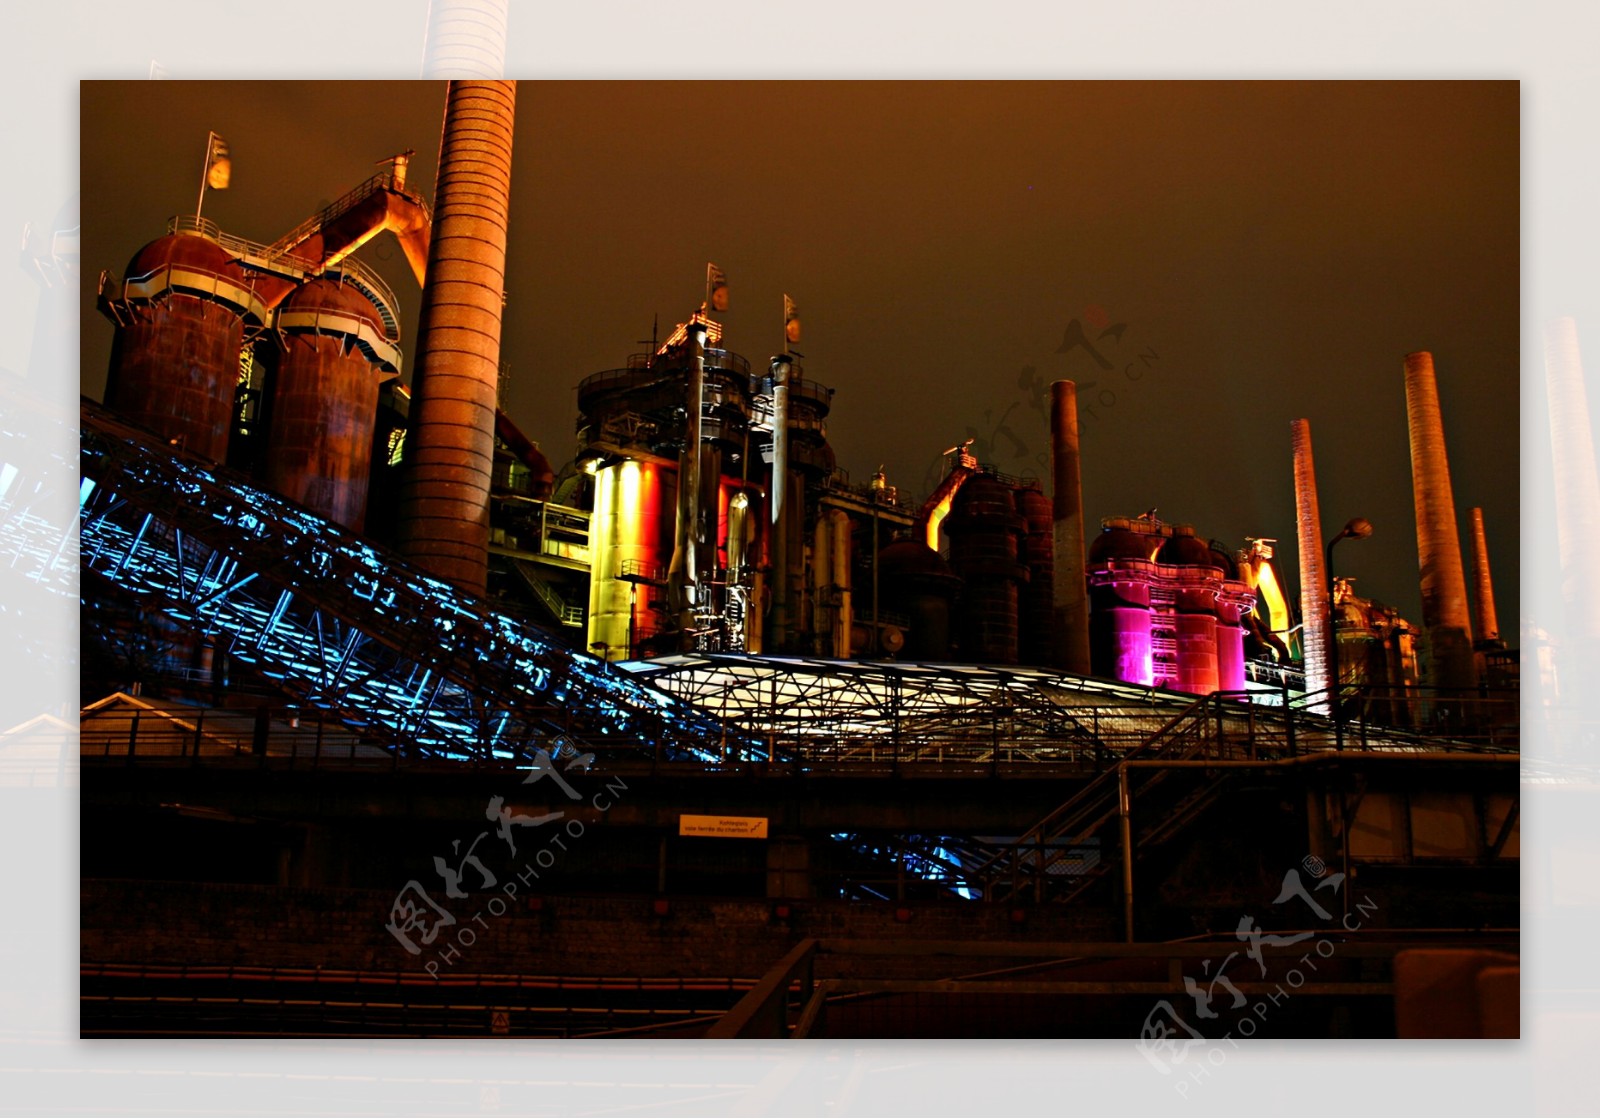 工厂夜景图片